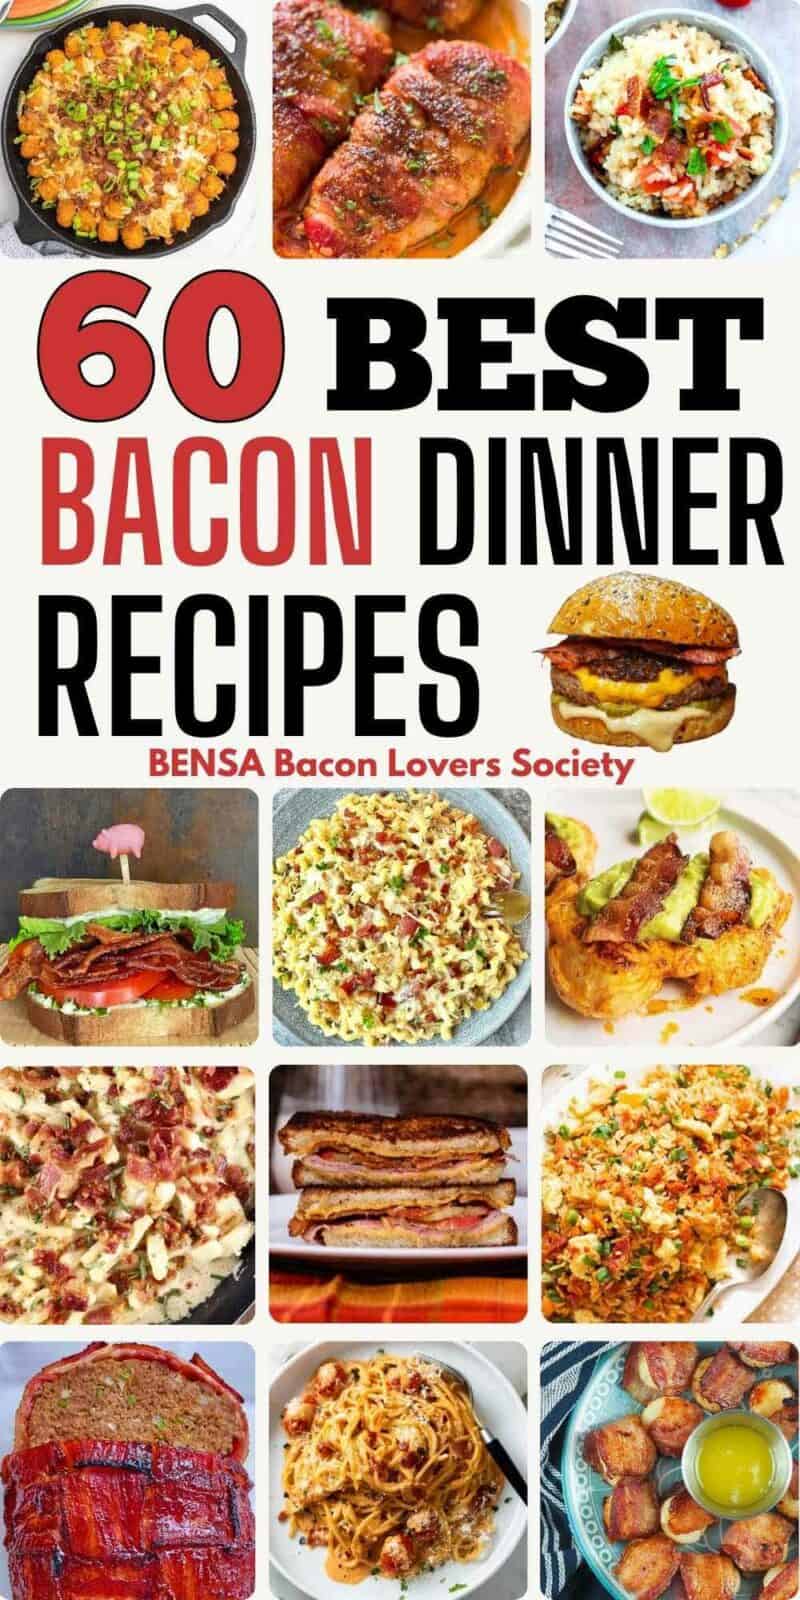 Bacon burger, BLT, pasta, chicken and dinner recipes.